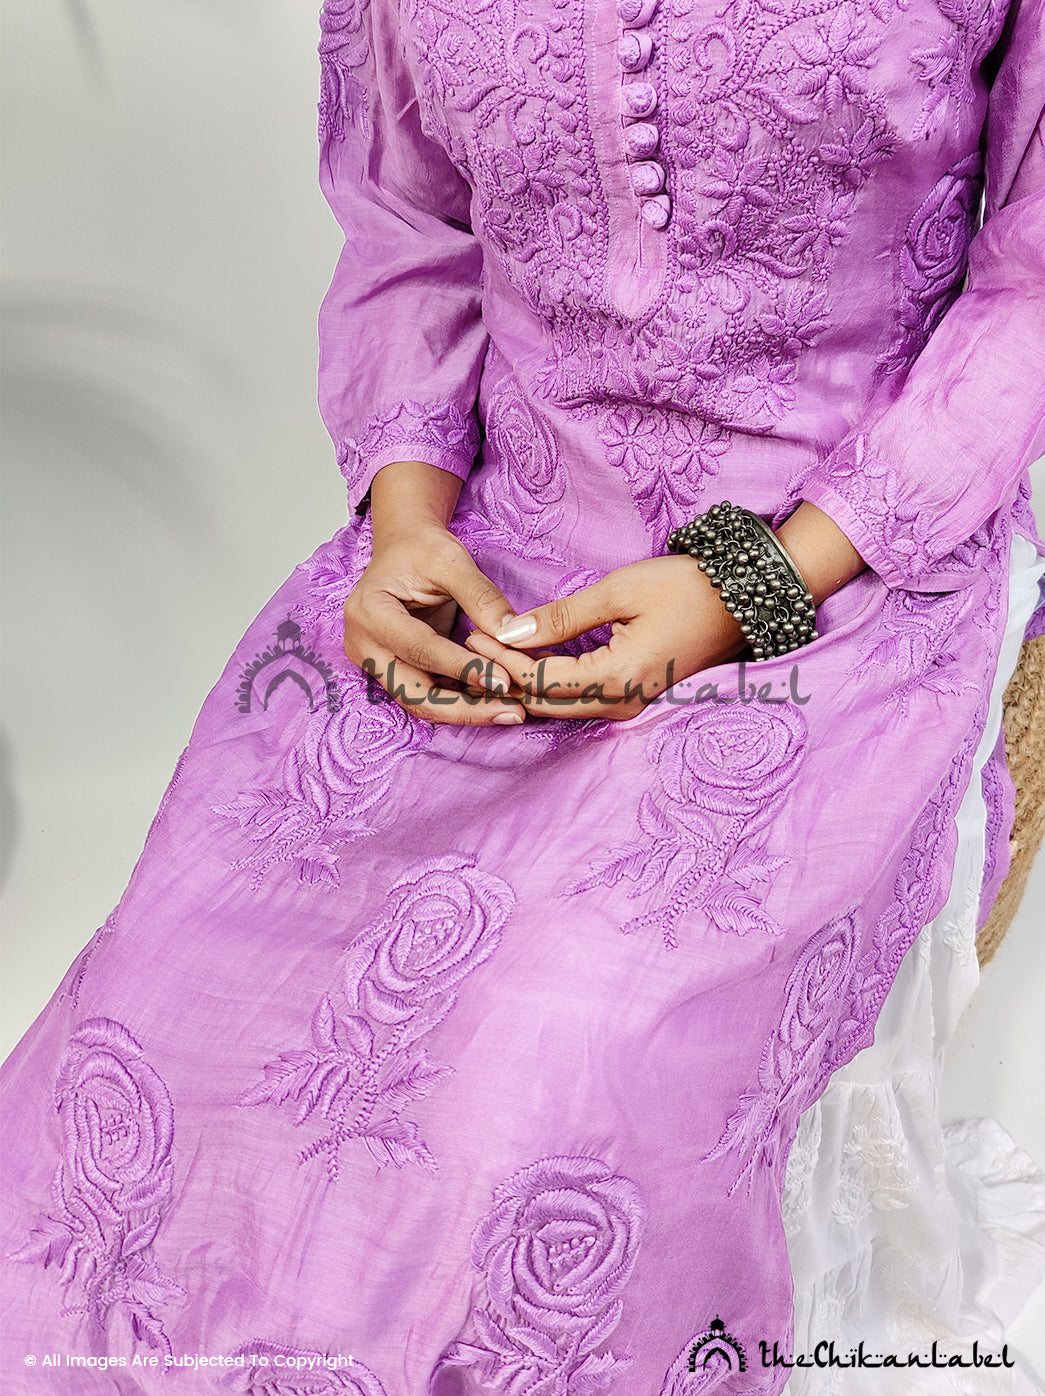 Buy chikankari straight kurti online at best prices, Shop authentic Lucknow chikankari handmade kurta kurti in muslin fabric for women 4